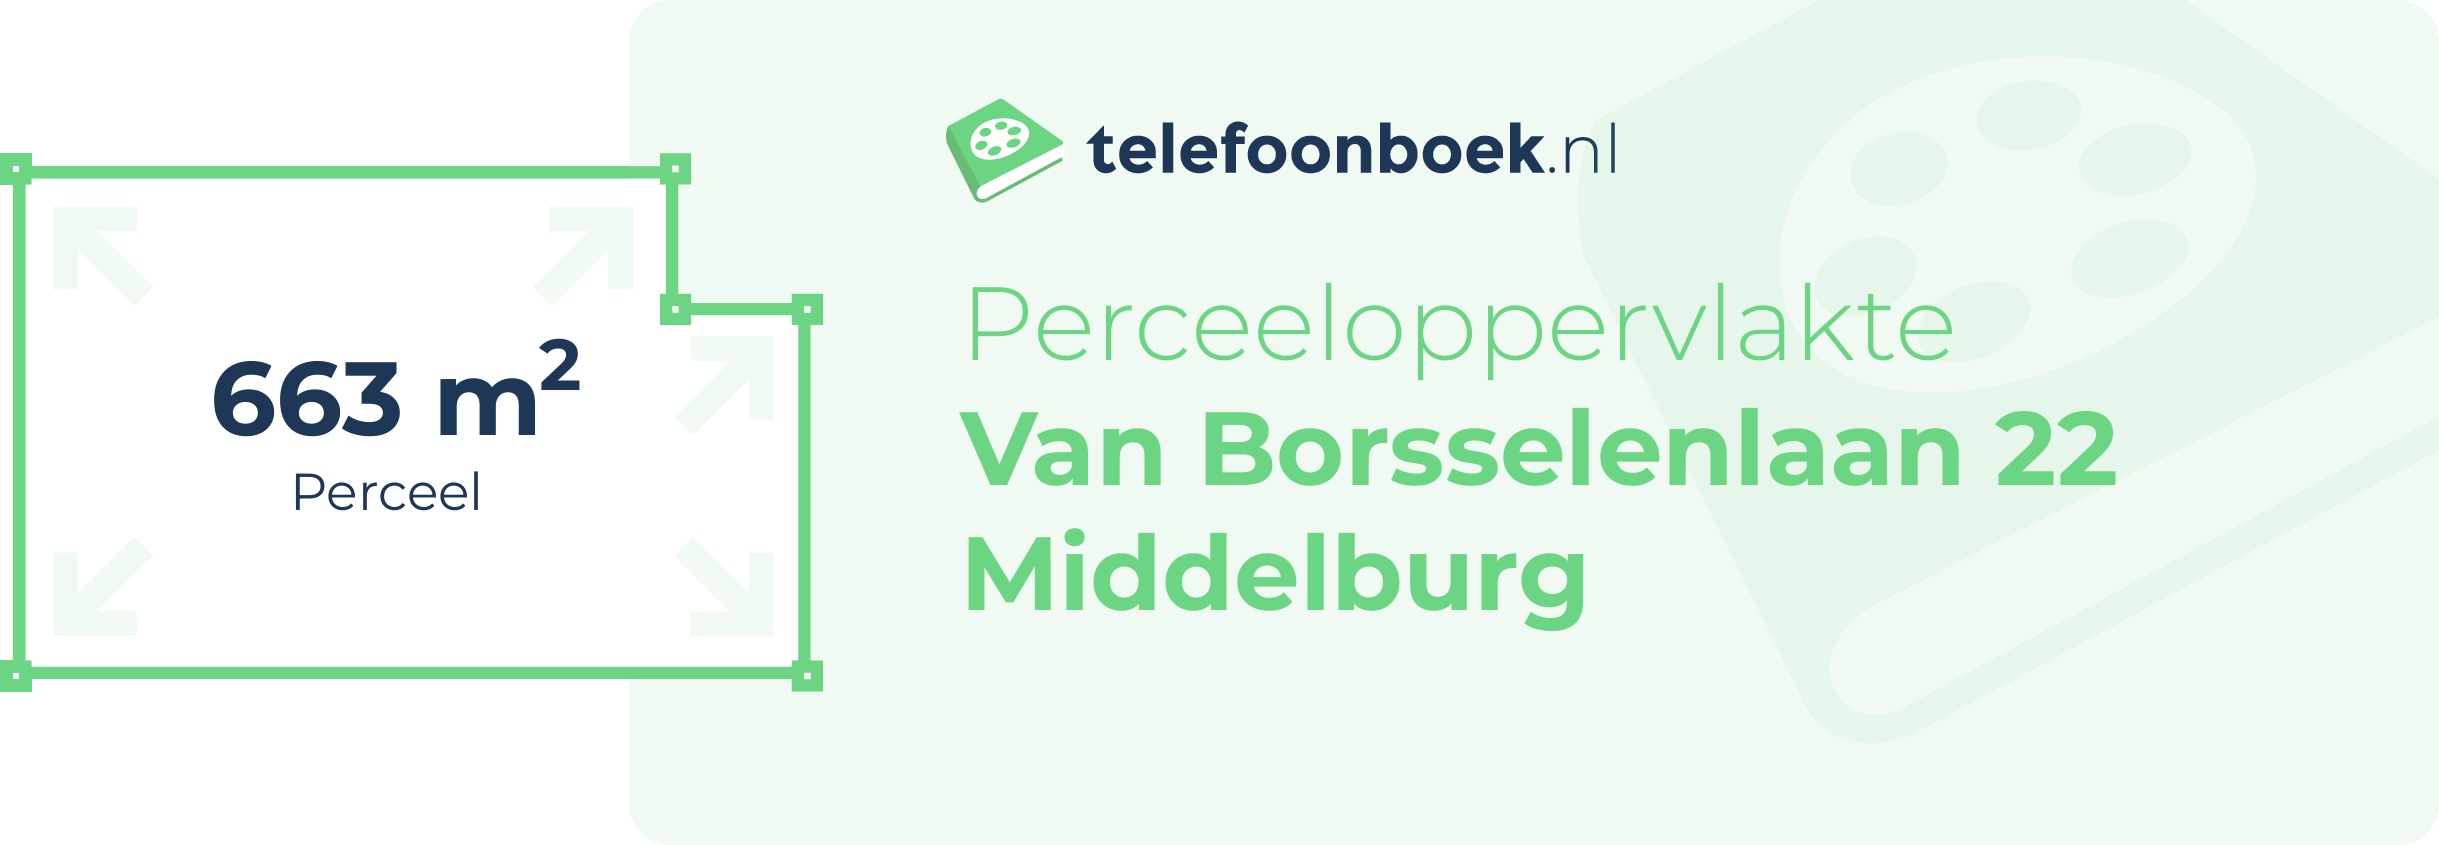 Perceeloppervlakte Van Borsselenlaan 22 Middelburg